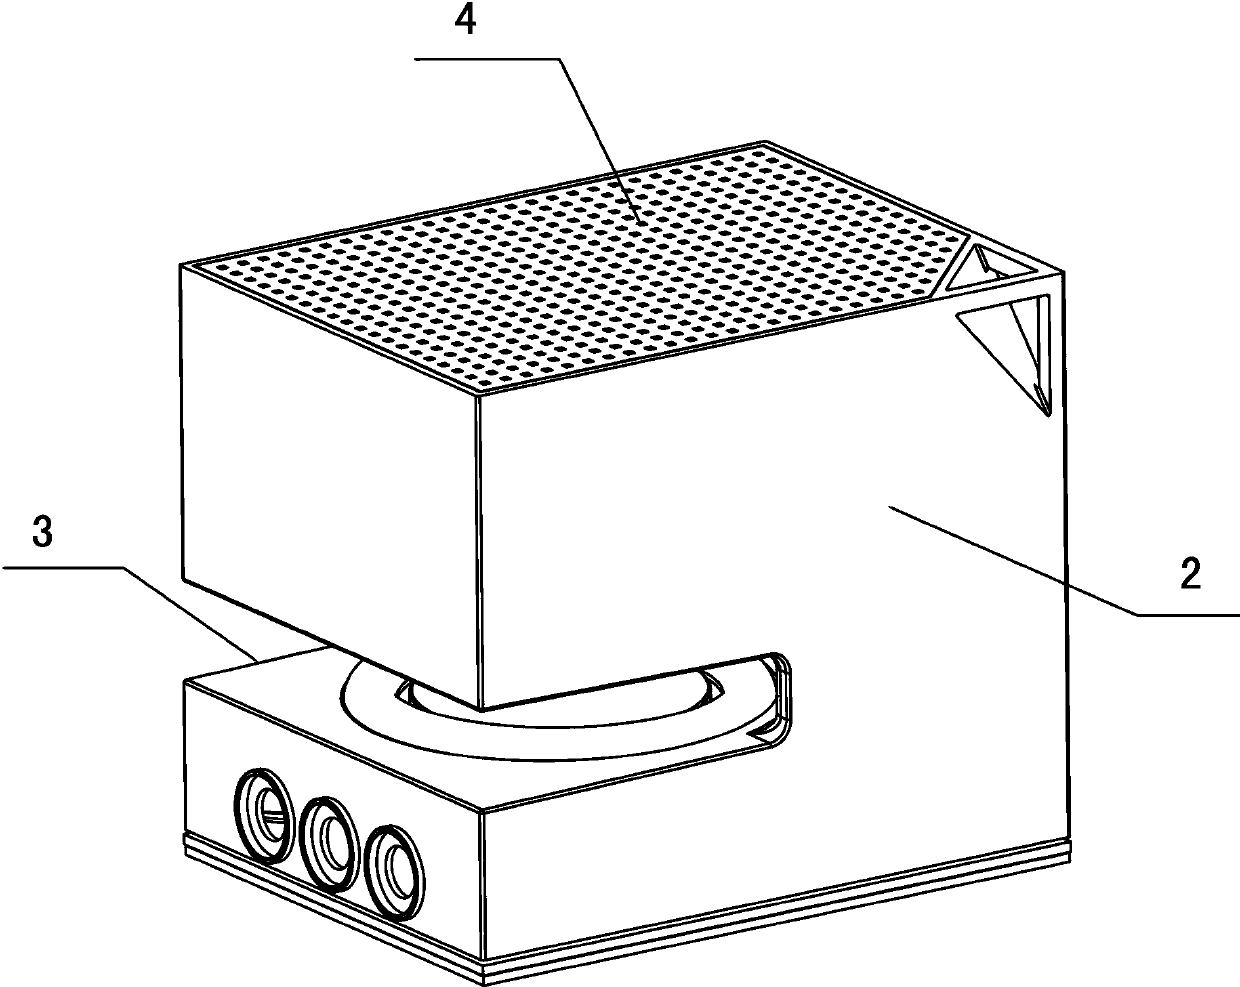 Double-vibrating-diaphragm loudspeaker box